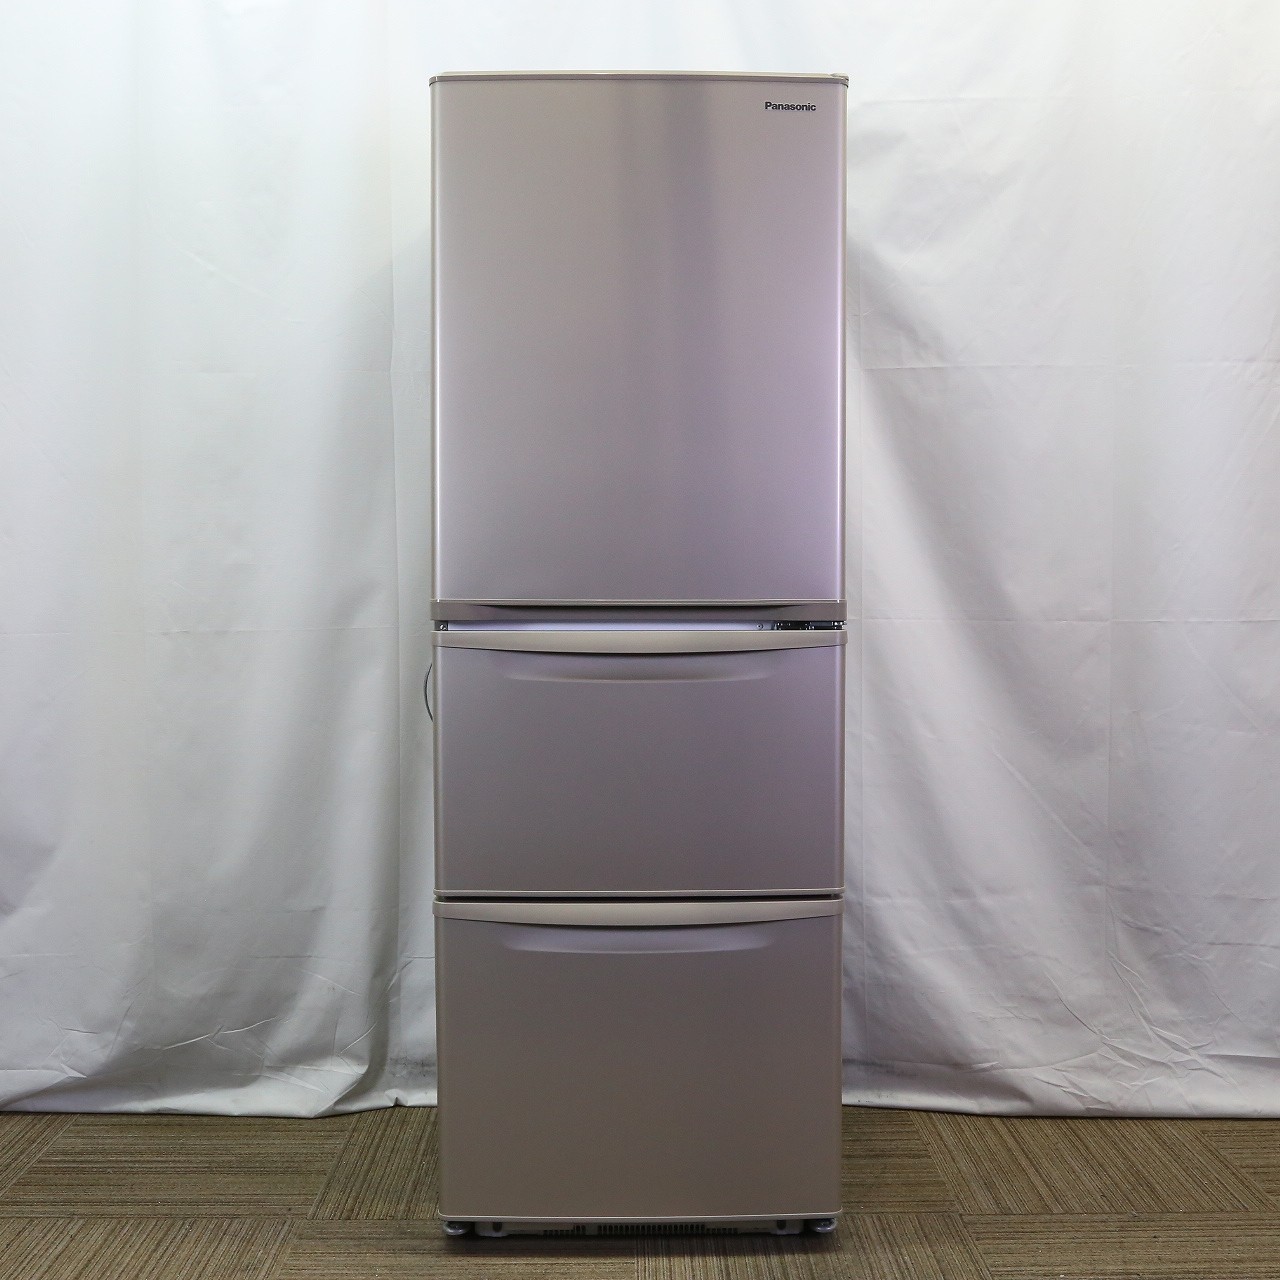 パナソニック NR-C343C-N 3ドアスリム冷凍冷蔵庫 (335L・右開き) グレイスゴールド